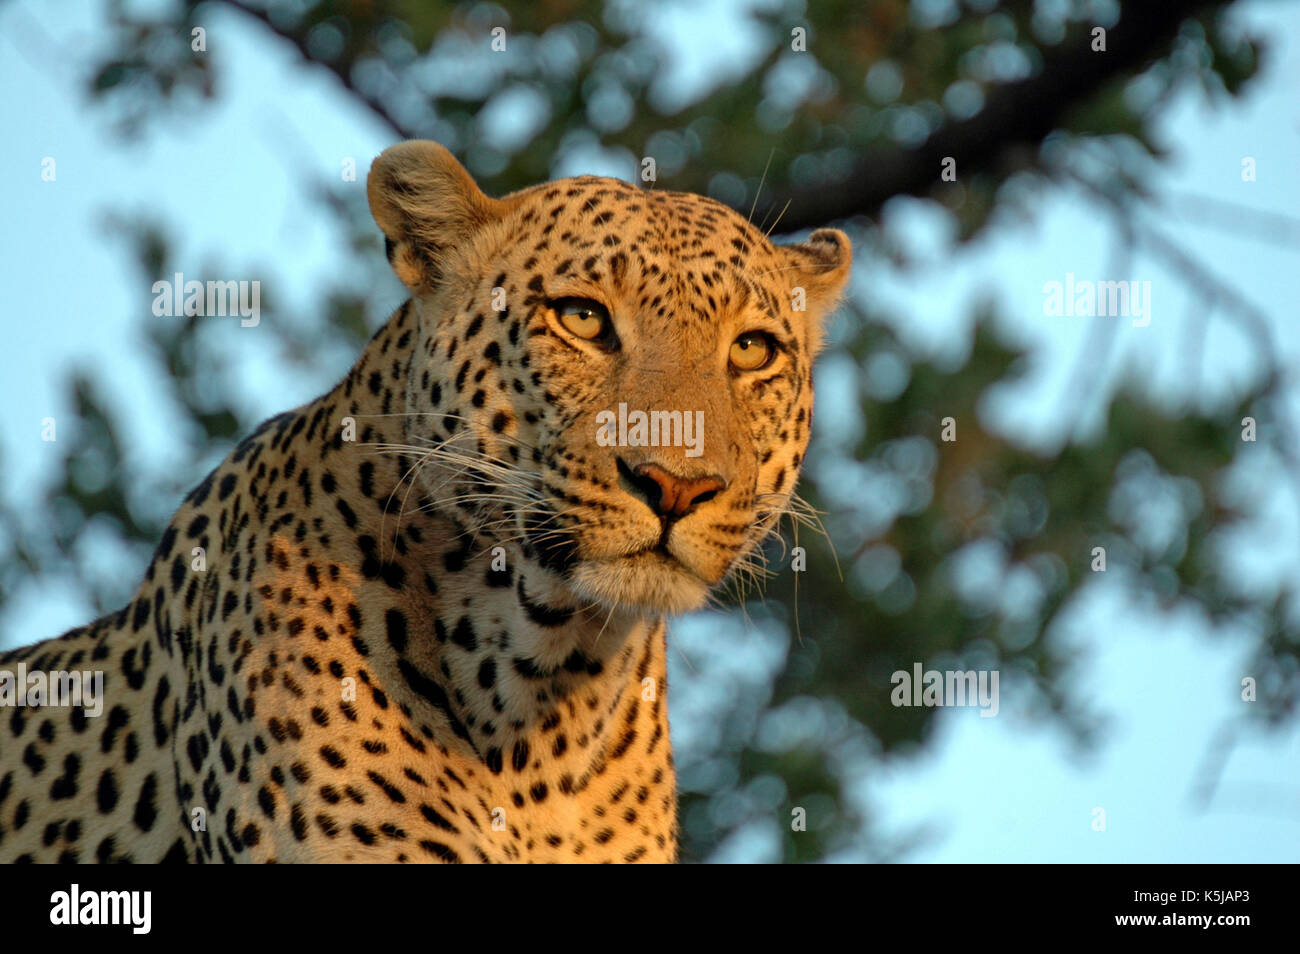 Leopard portrait in the golden hour. Taken in the Okavango Delta, Botswana Stock Photo